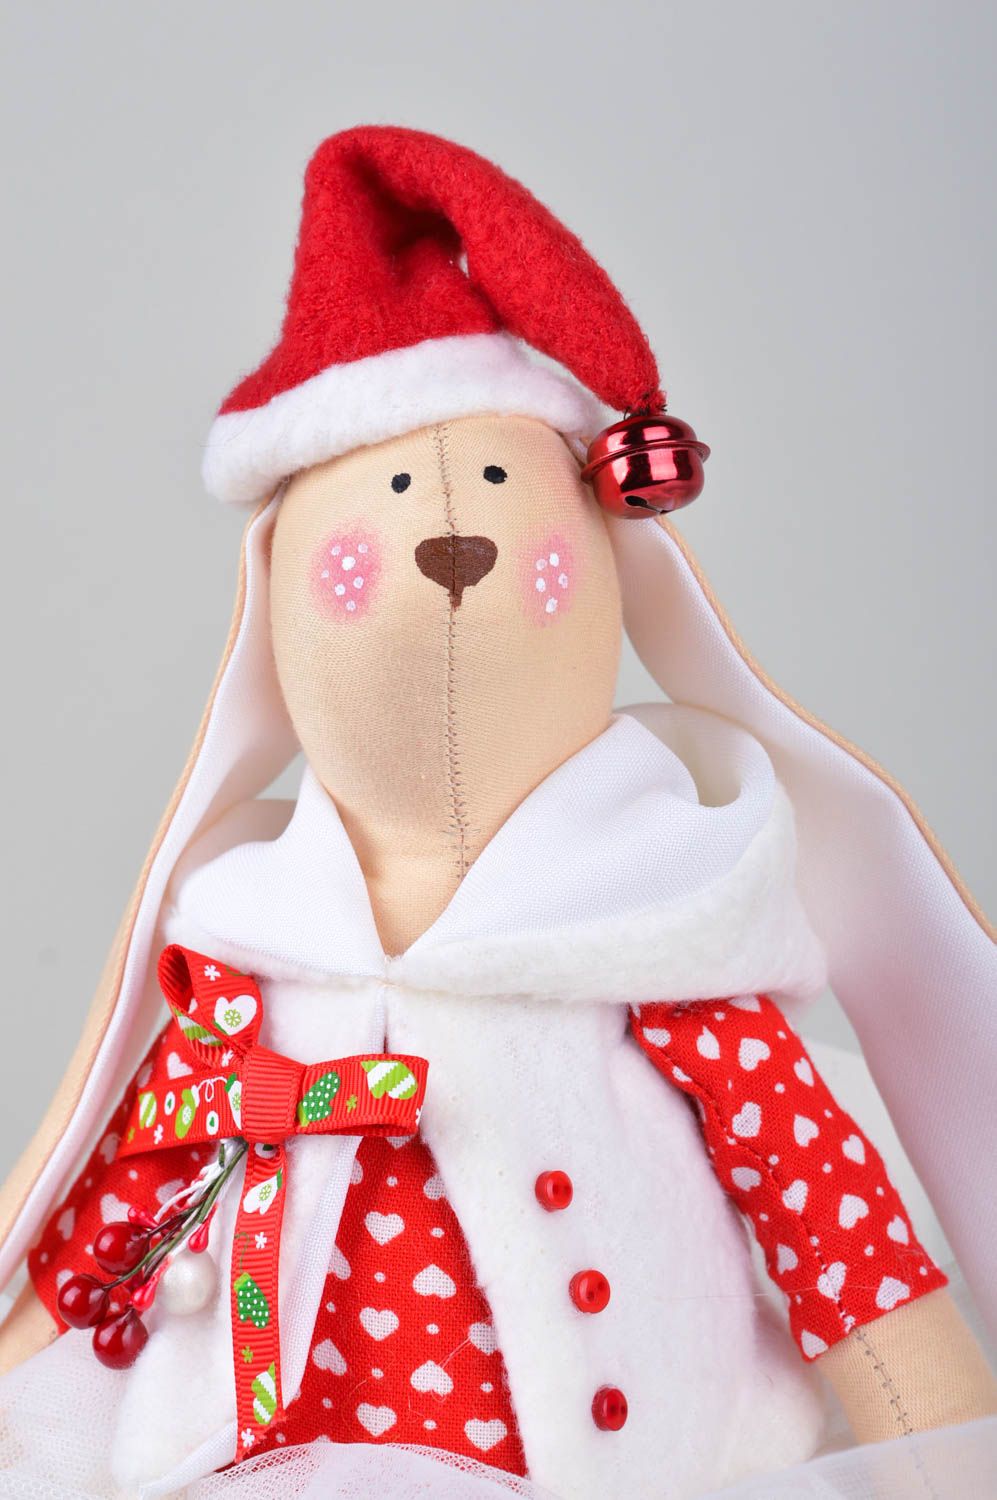 Spielzeug Hase handmade im Rock Haus Deko Geschenk für Kinder stilvoll festlich foto 1